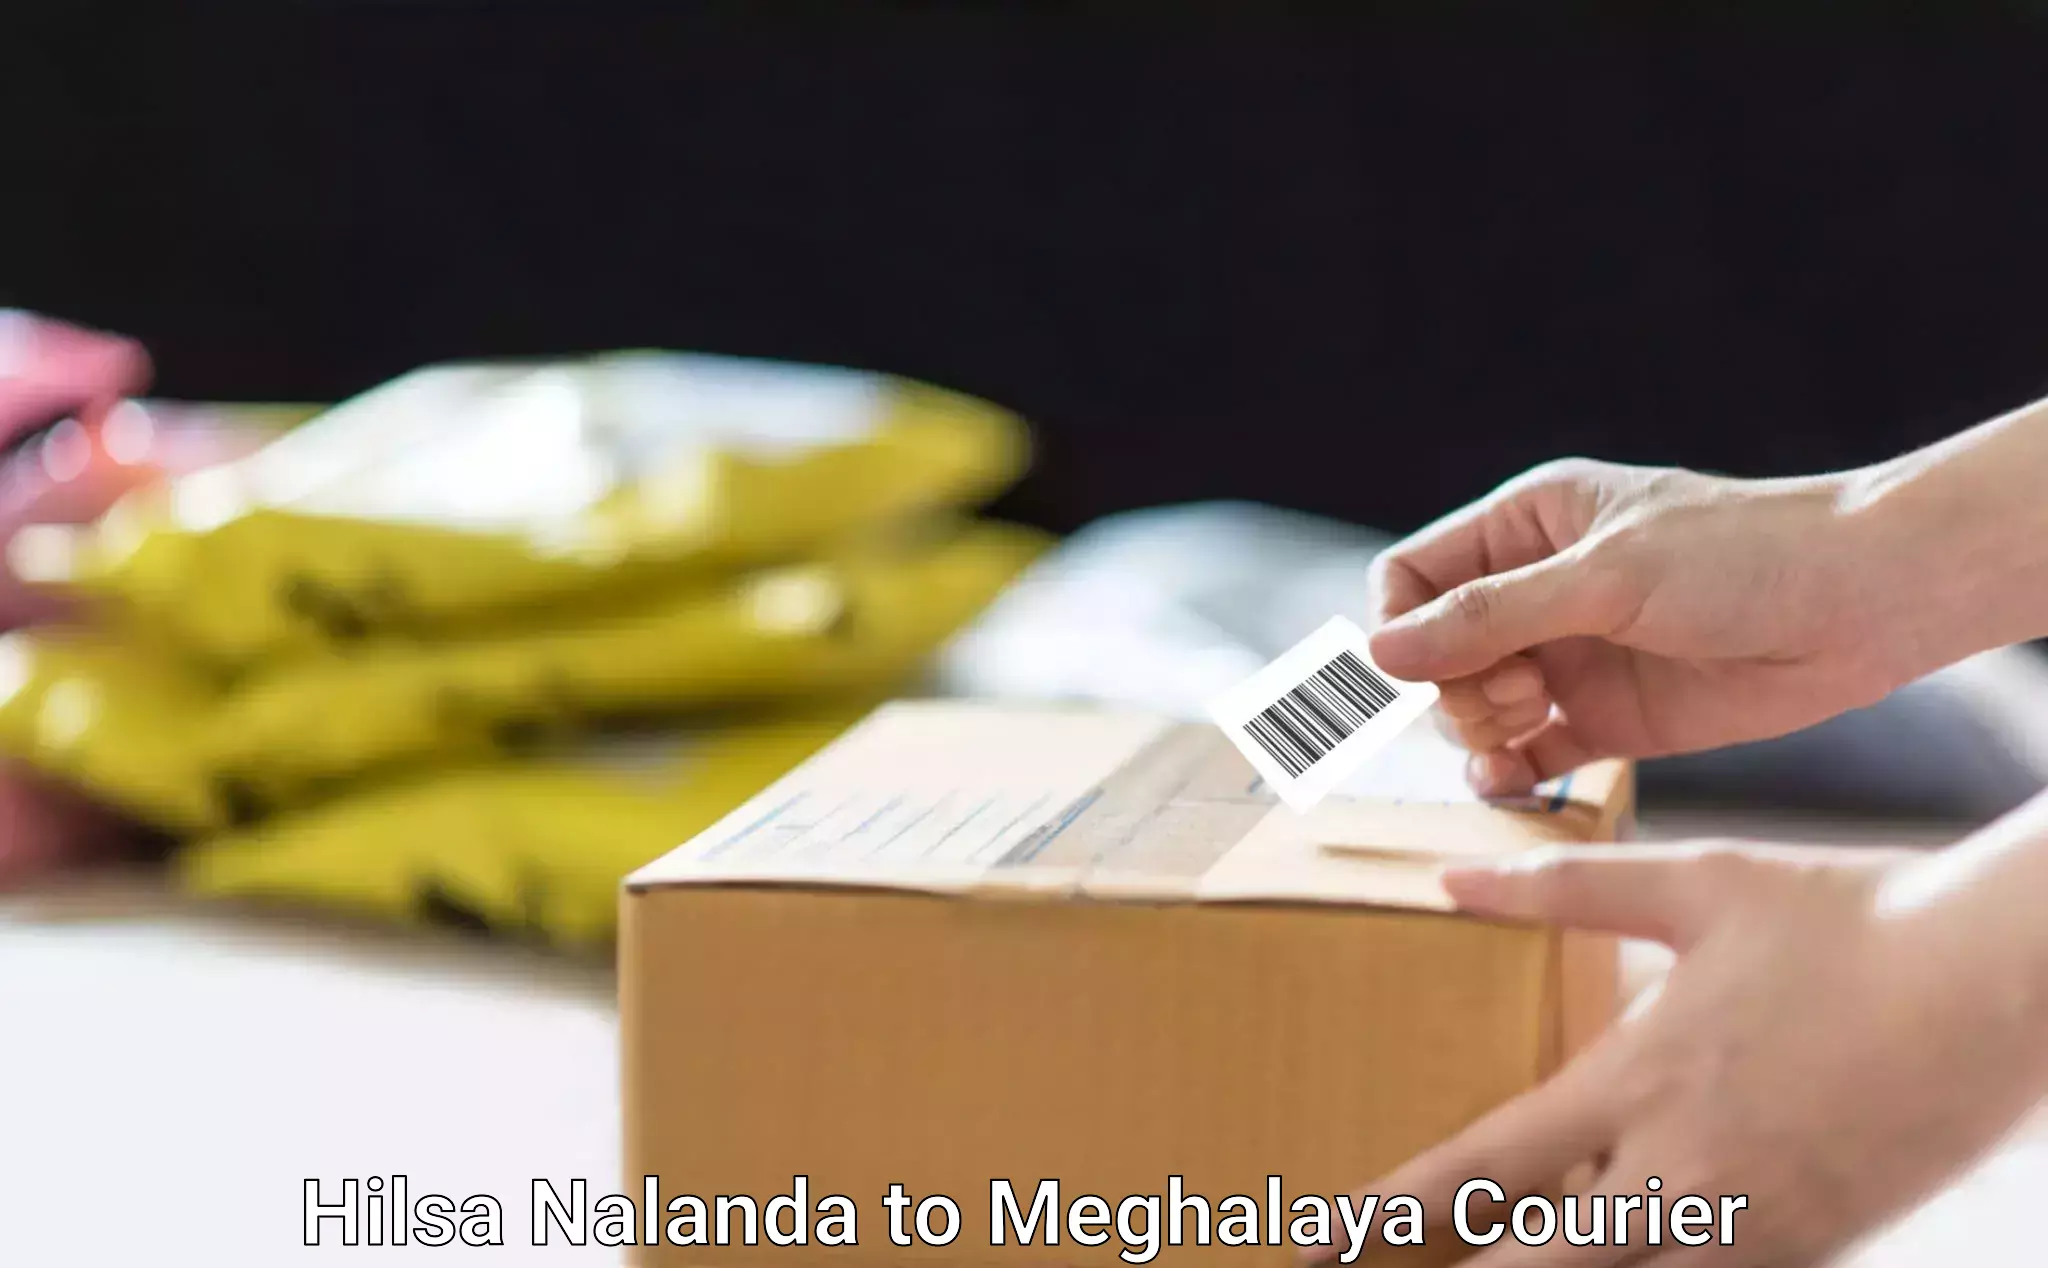 Specialized home movers Hilsa Nalanda to Meghalaya